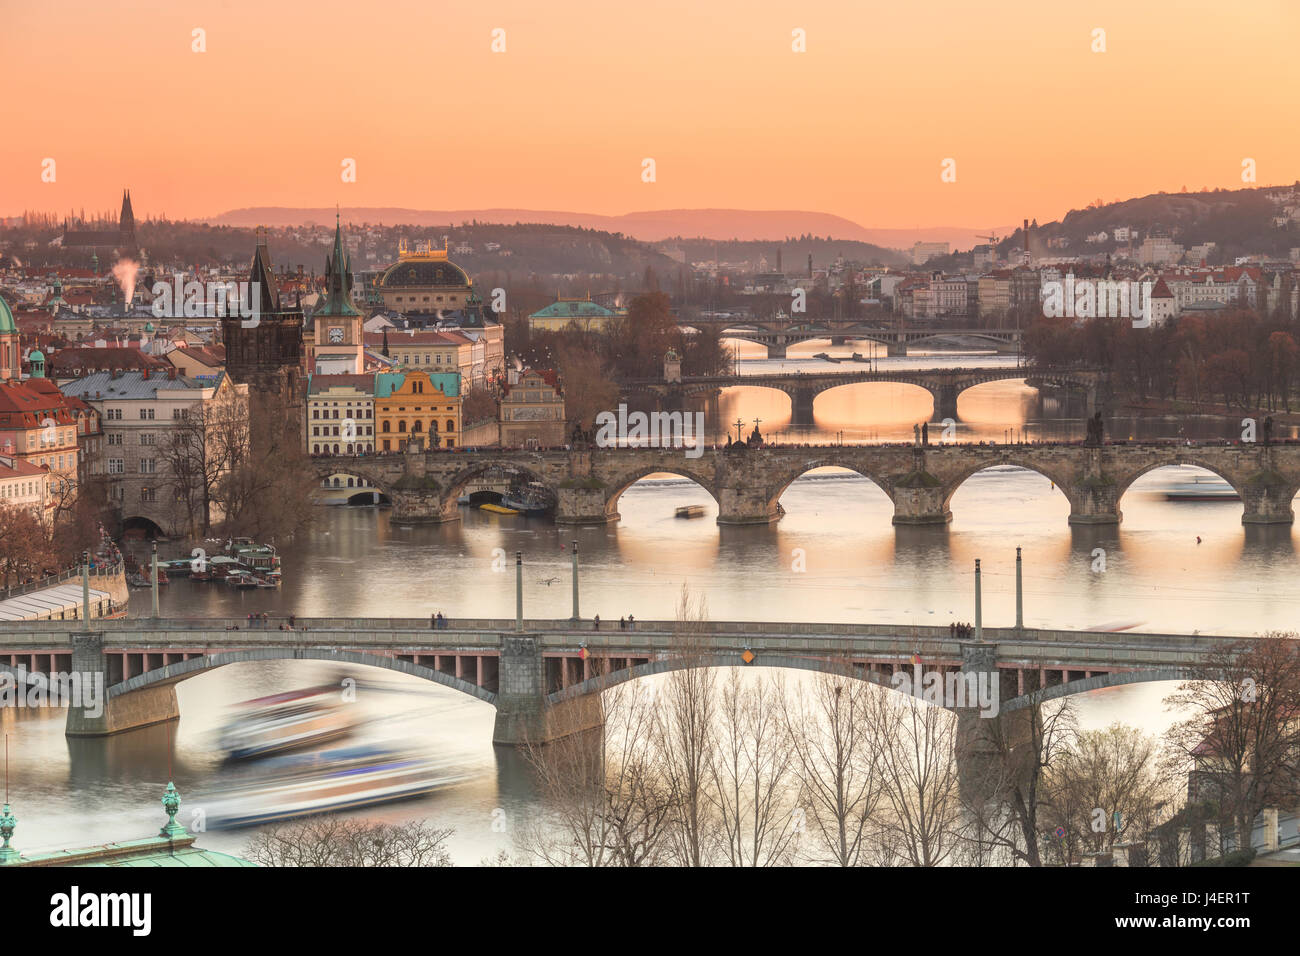 Ciel Orange au coucher du soleil sur les ponts et bâtiments historiques reflétés sur la rivière Vltava, Prague, République Tchèque, Europe Banque D'Images